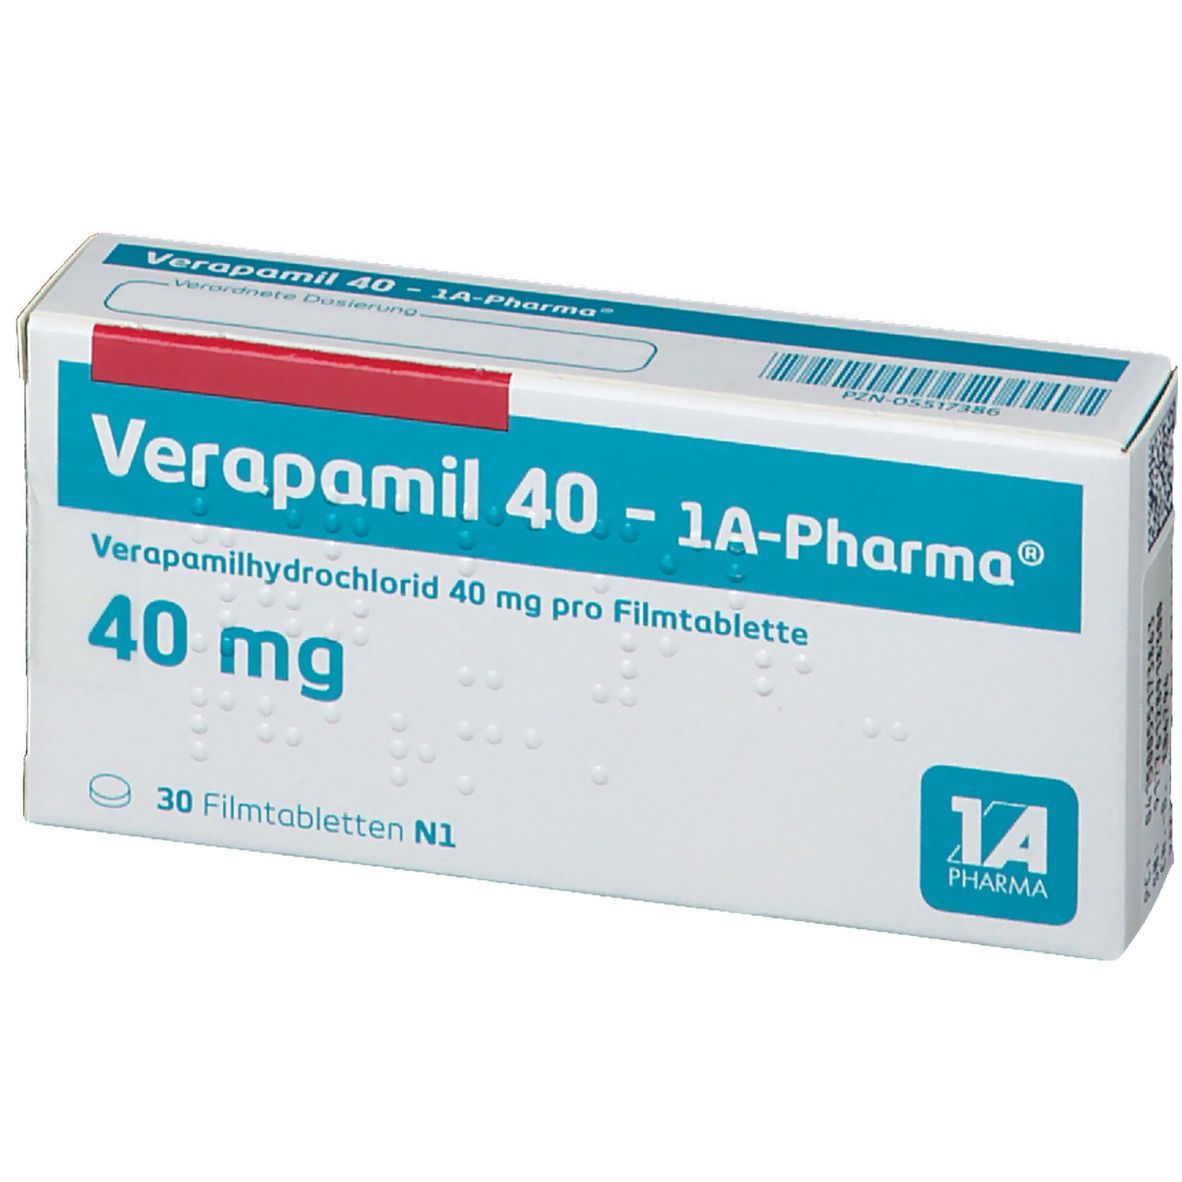 Verapamil 40 1A Pharma®